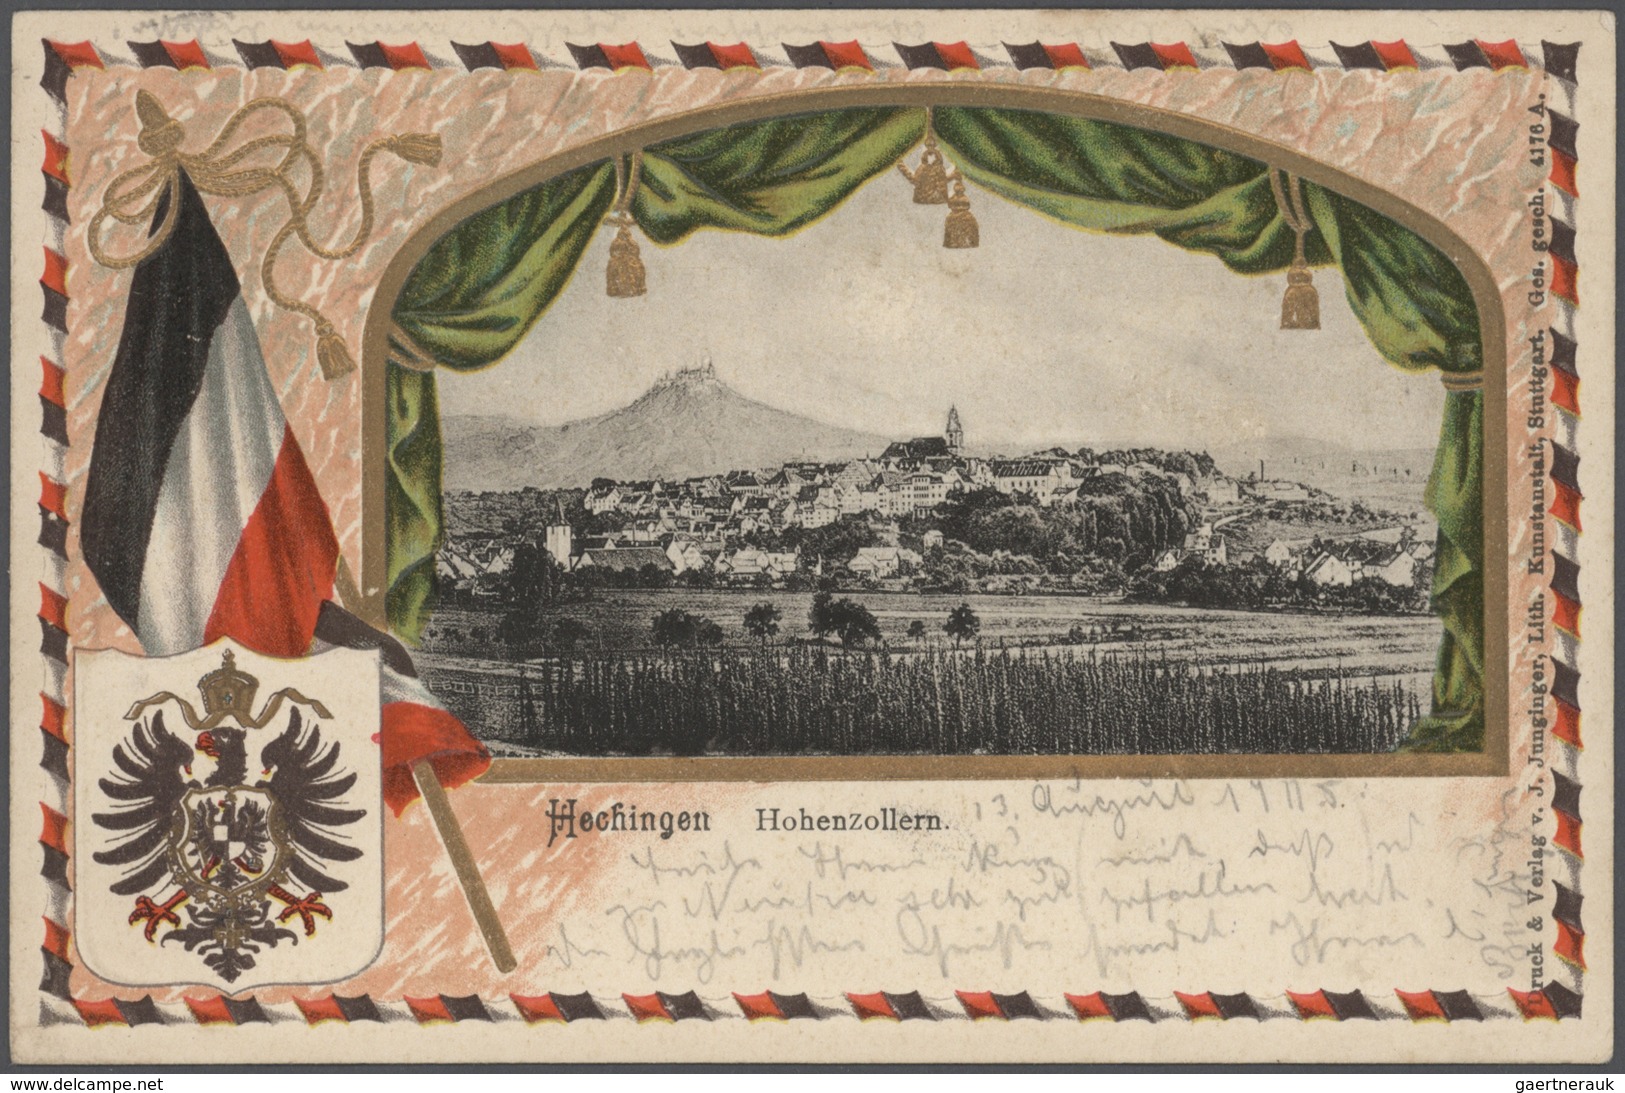 Ansichtskarten: Baden-Württemberg: SCHWÄBISCHE ALB (alte PLZ 742 - 745), Schachtel mit über 850 meis